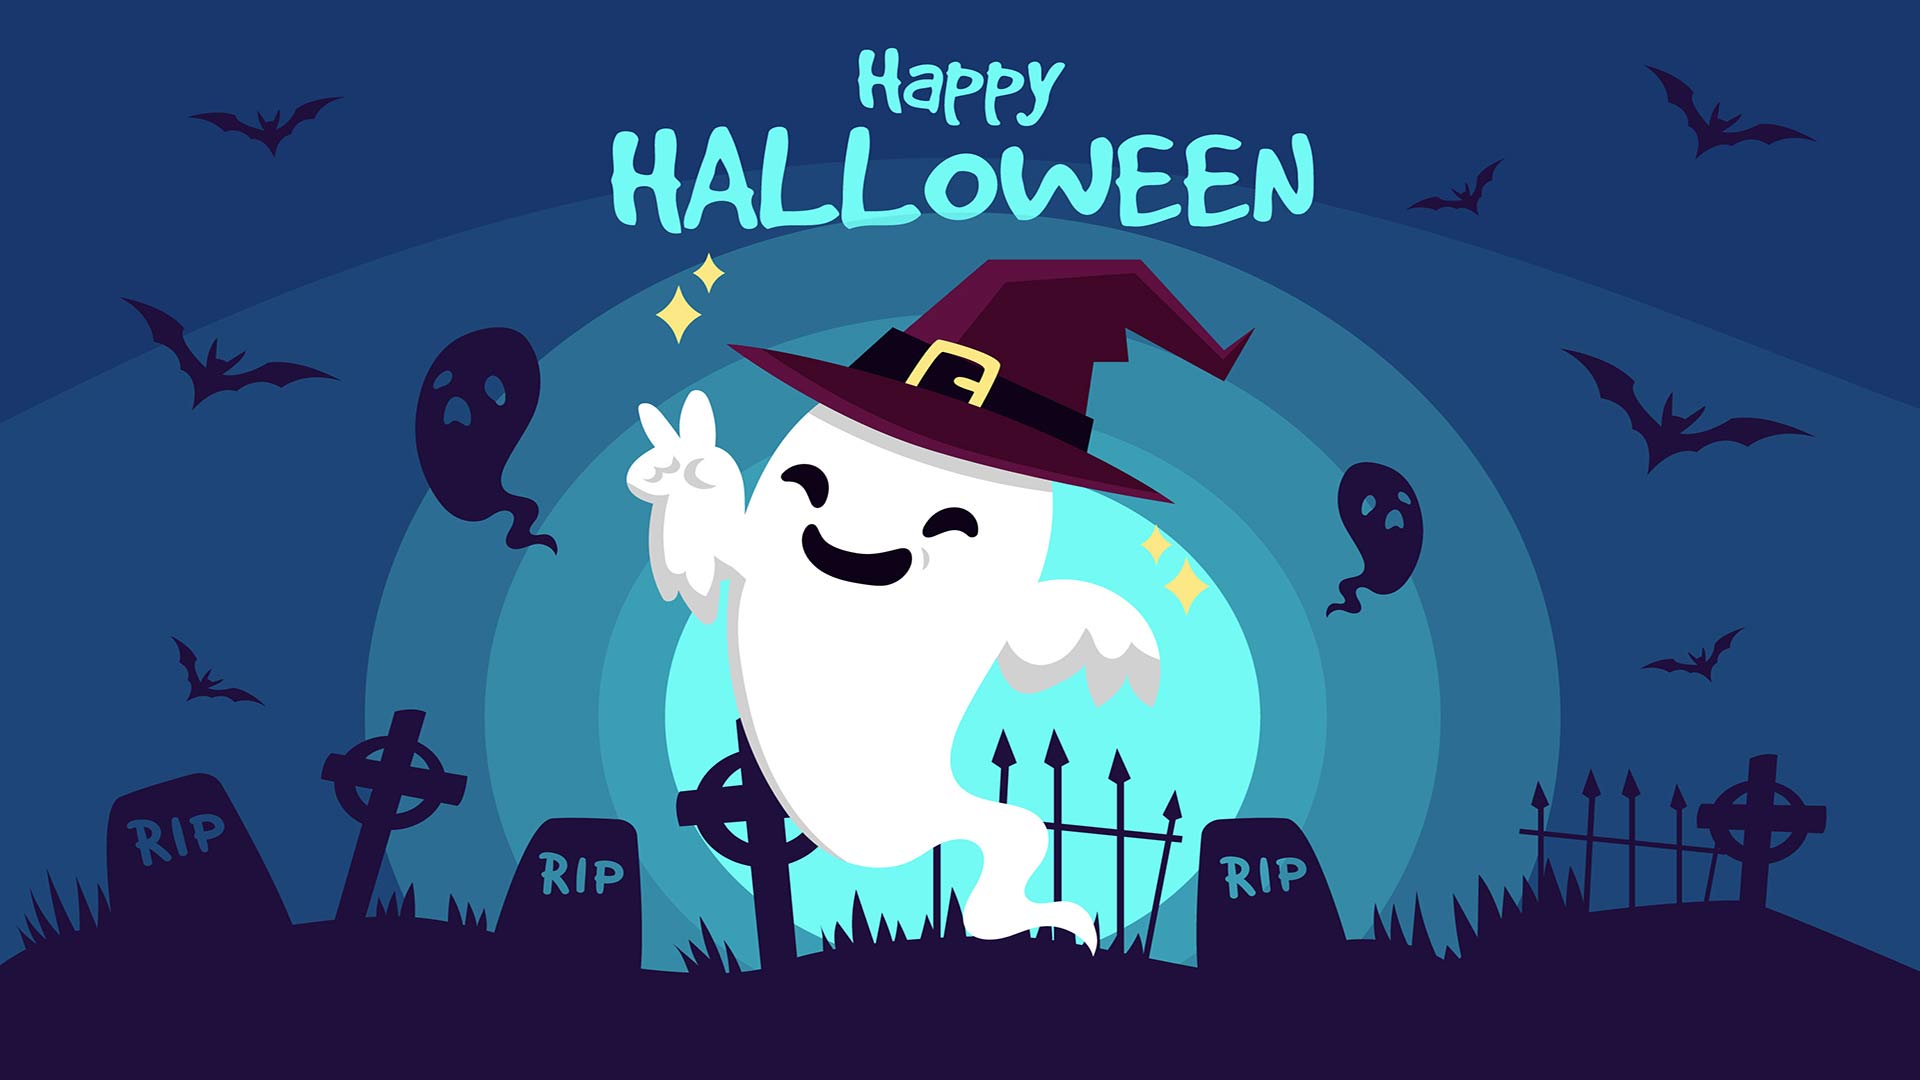 Hình nền đẹp cho chủ đề ngày Halloween – Quảng Cáo Sài Gòn 24h